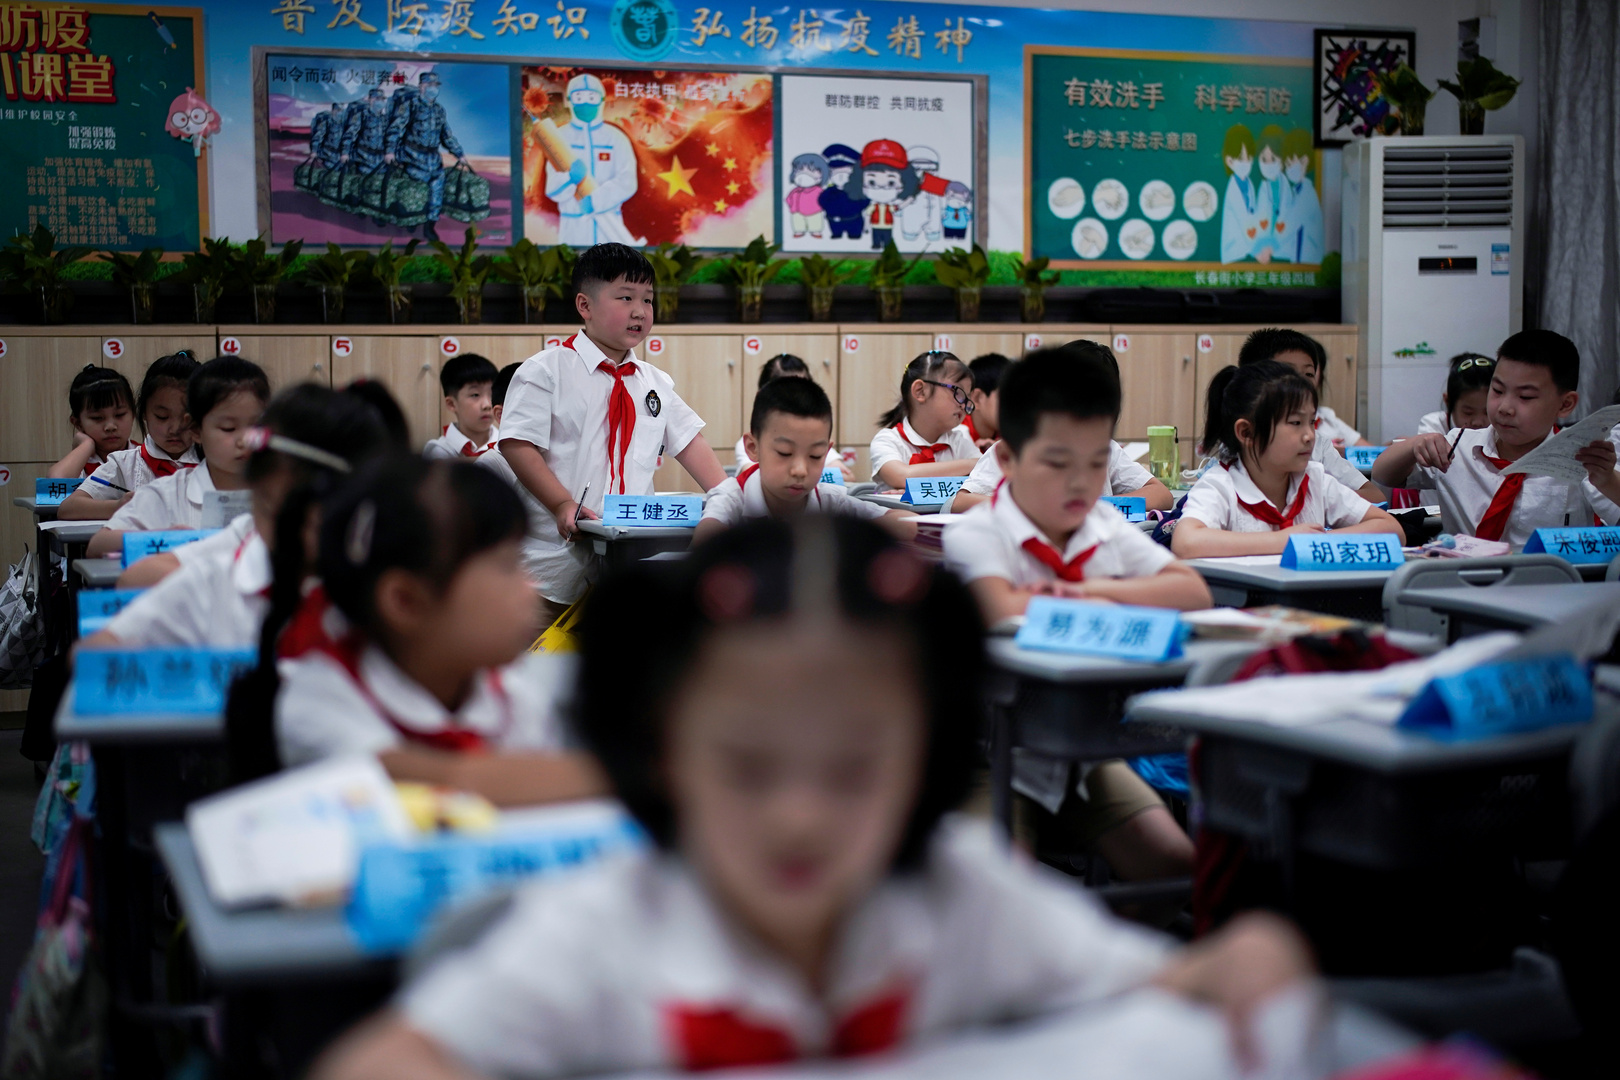 معلم رياضيات في الصين يعاقب تلميذته حتى الموت